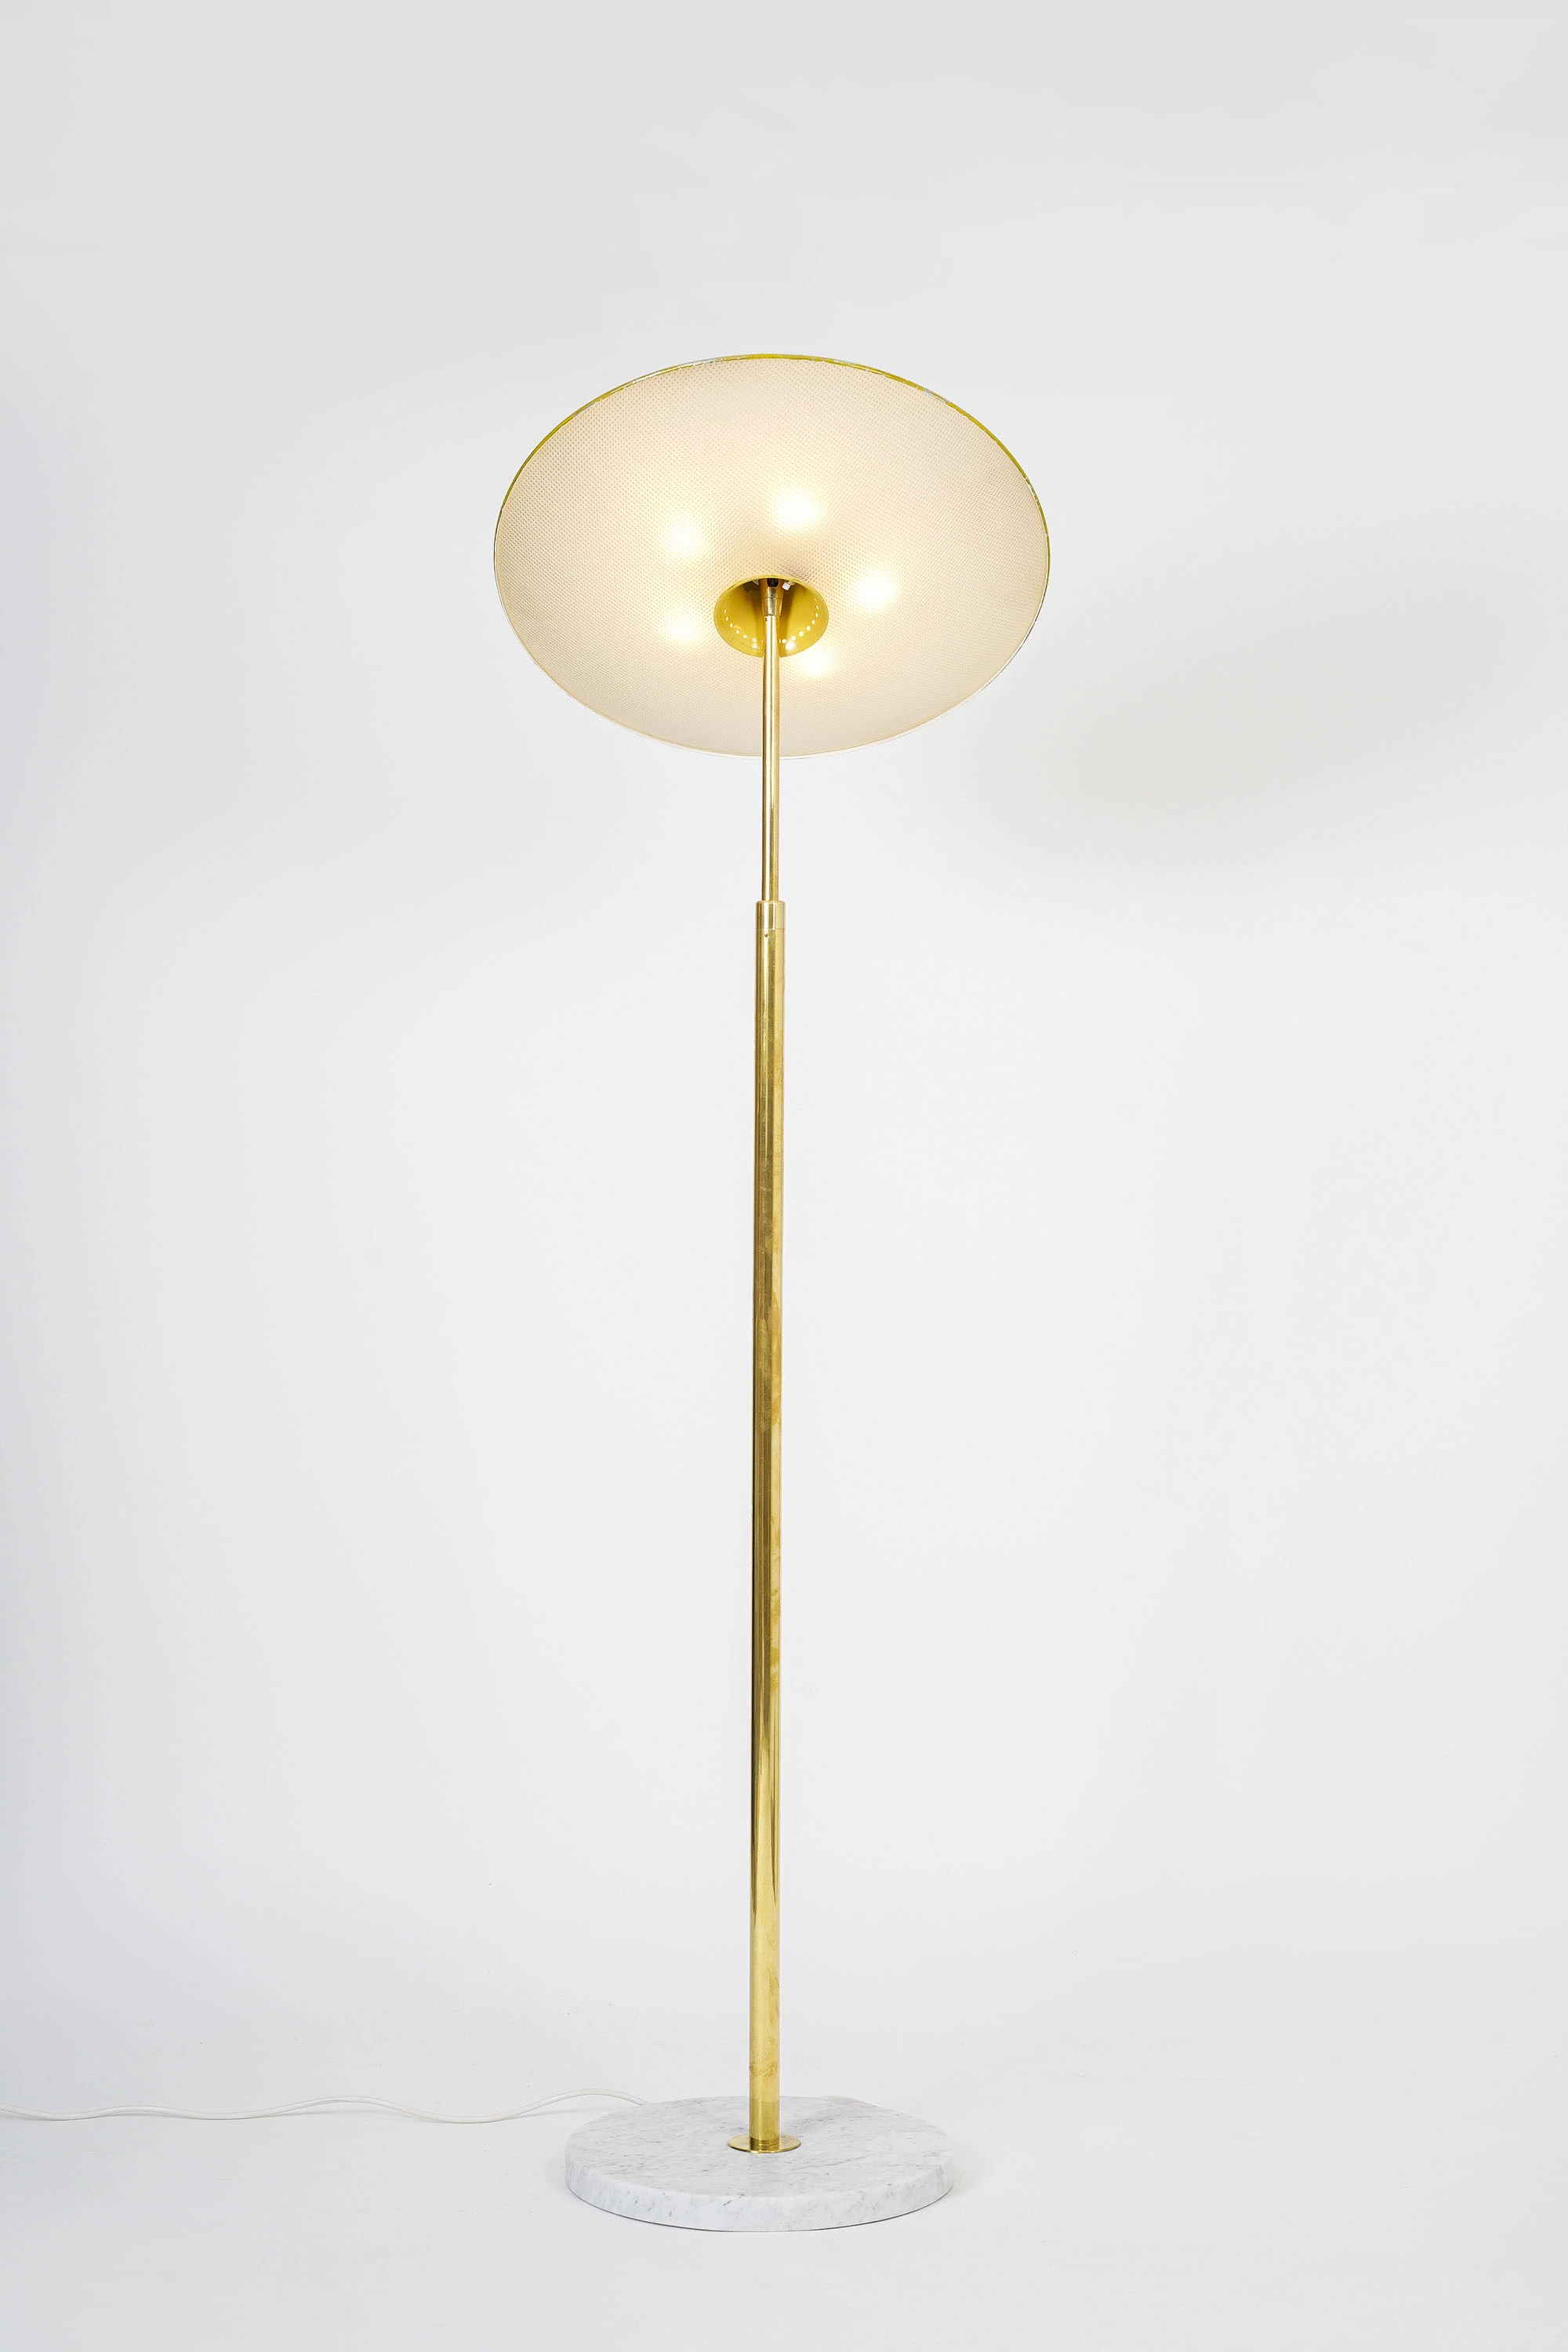 344  - Giuseppe Ostuni - Floor light - Galerie kreo